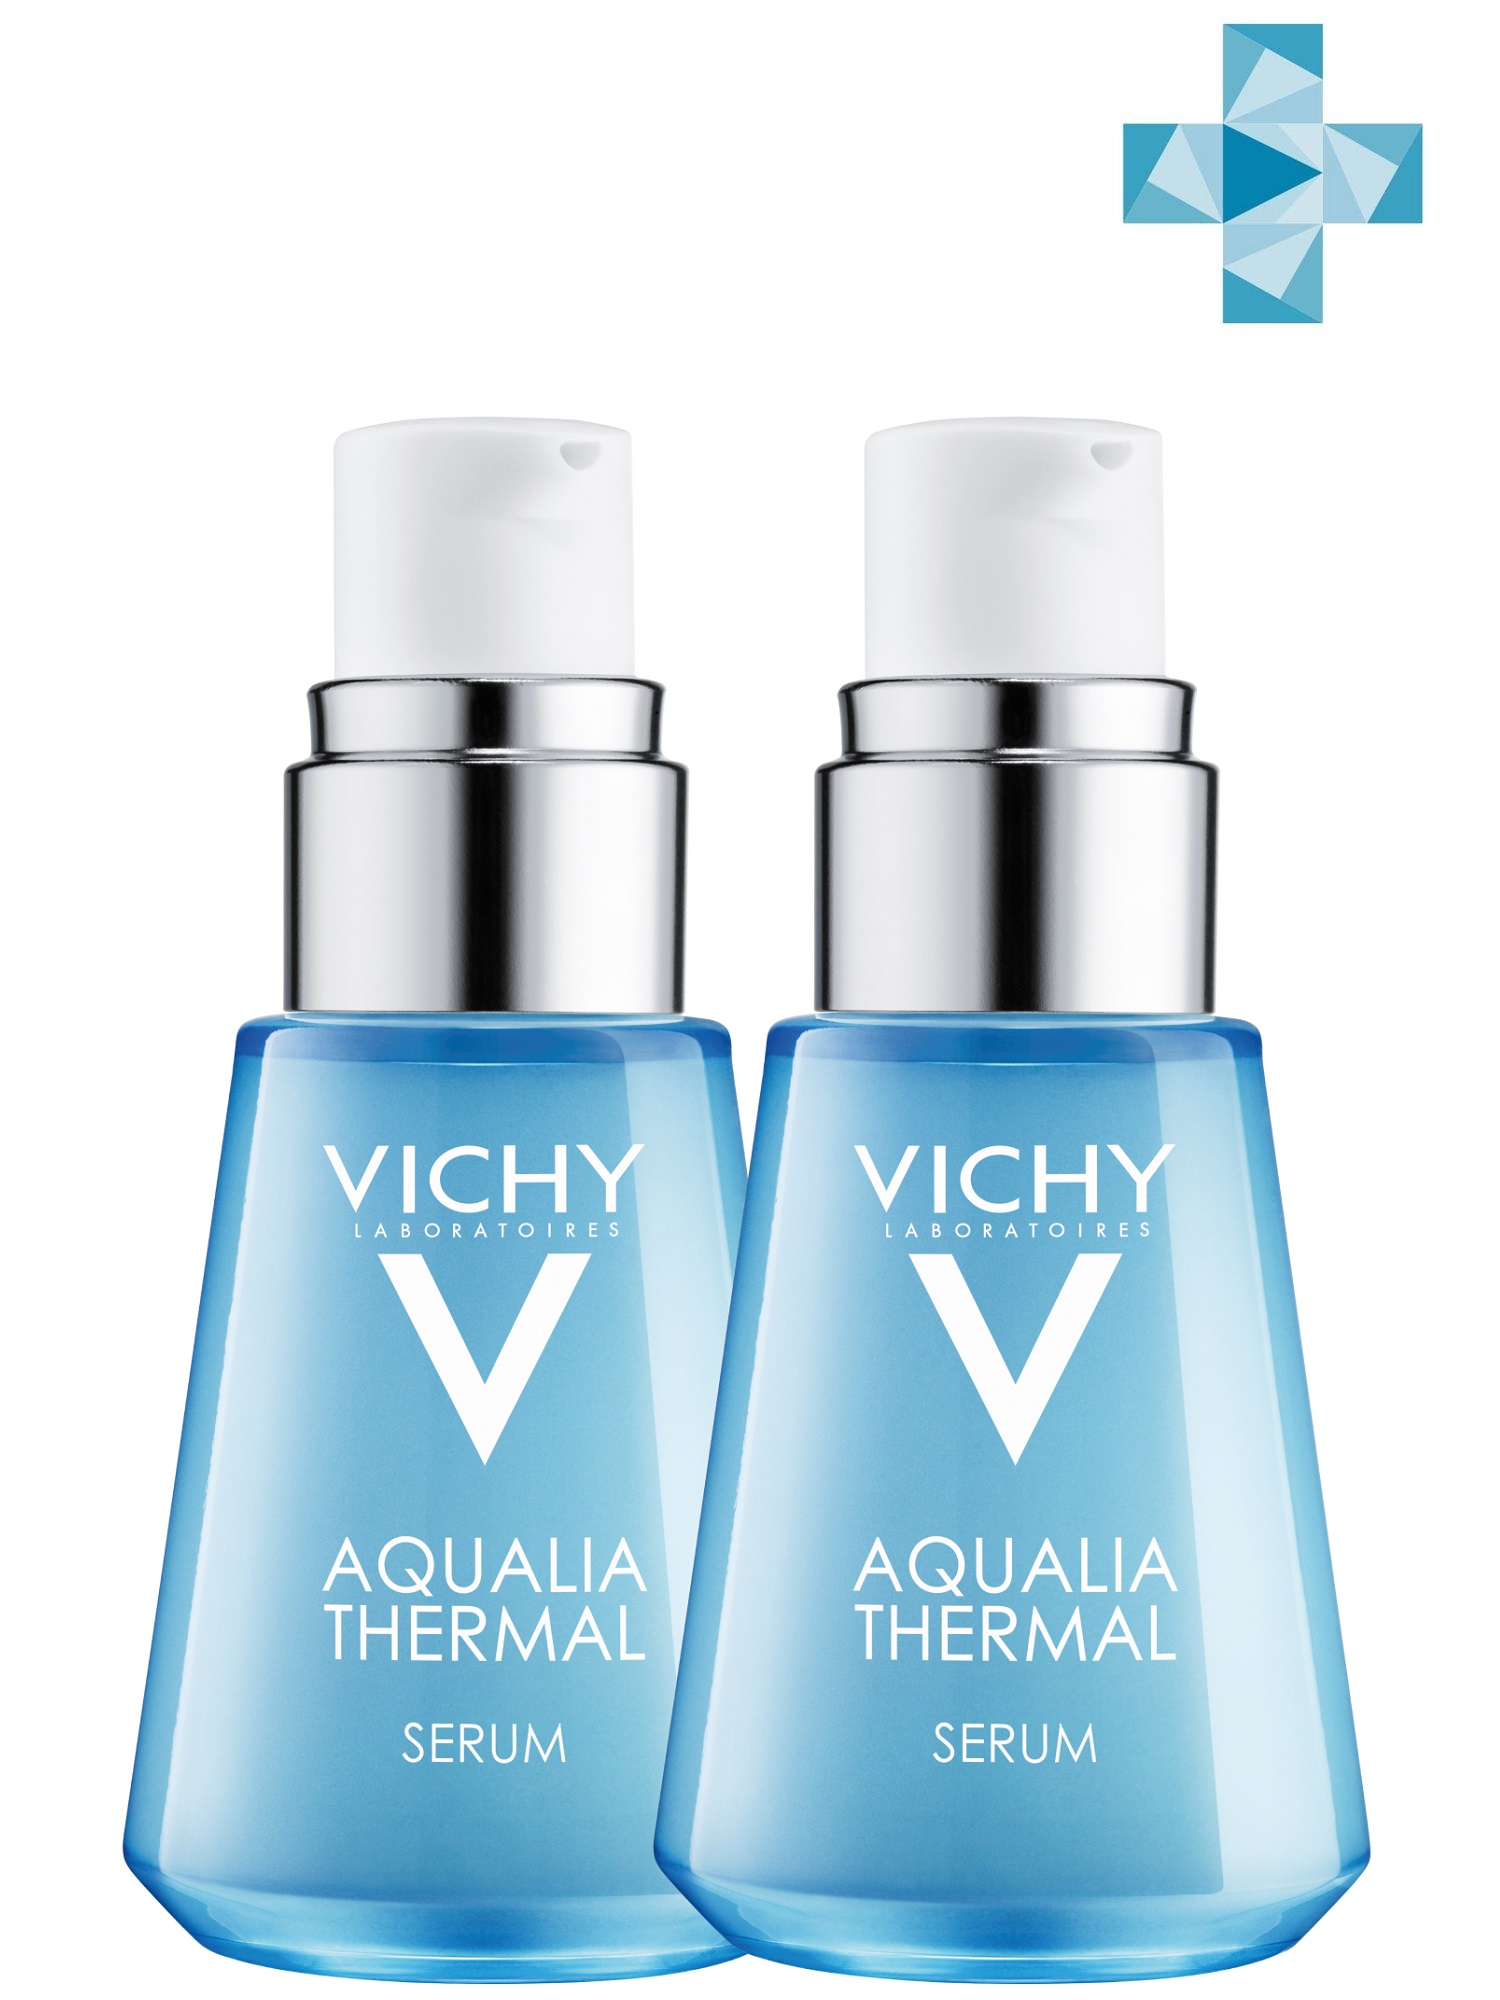 Купить Vichy Комплект Аквалия Термаль Увлажняющая сыворотка для всех типов кожи, 2 шт. по 30 мл (Vichy, Aqualia Thermal), Франция